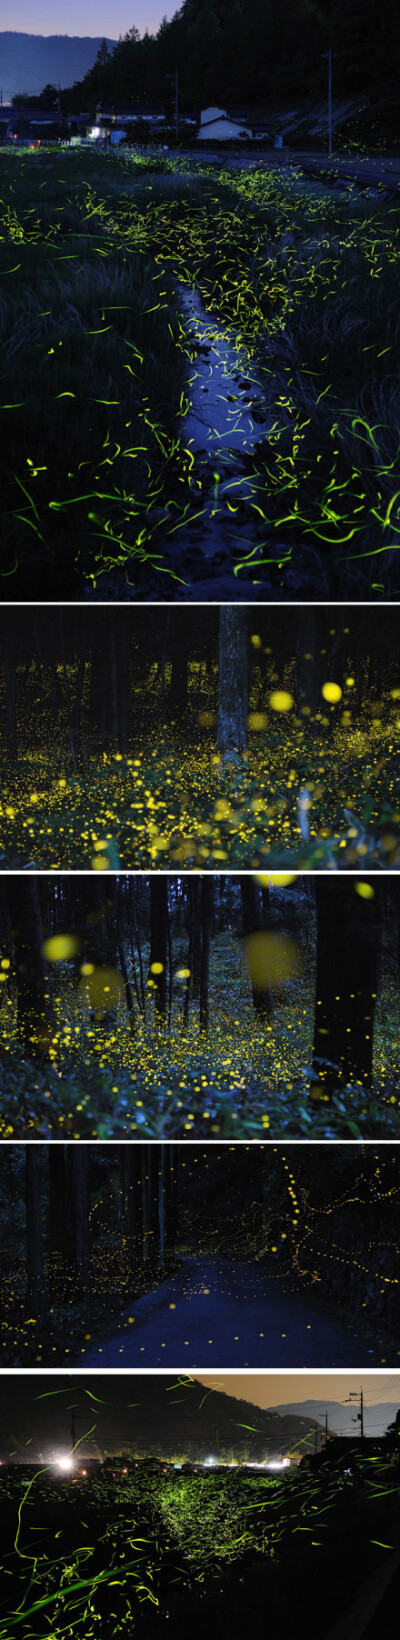 日本摄影师Yuki Karozai利用长时间曝光手法拍摄的萤火虫~~丛林间飞舞的精灵~~